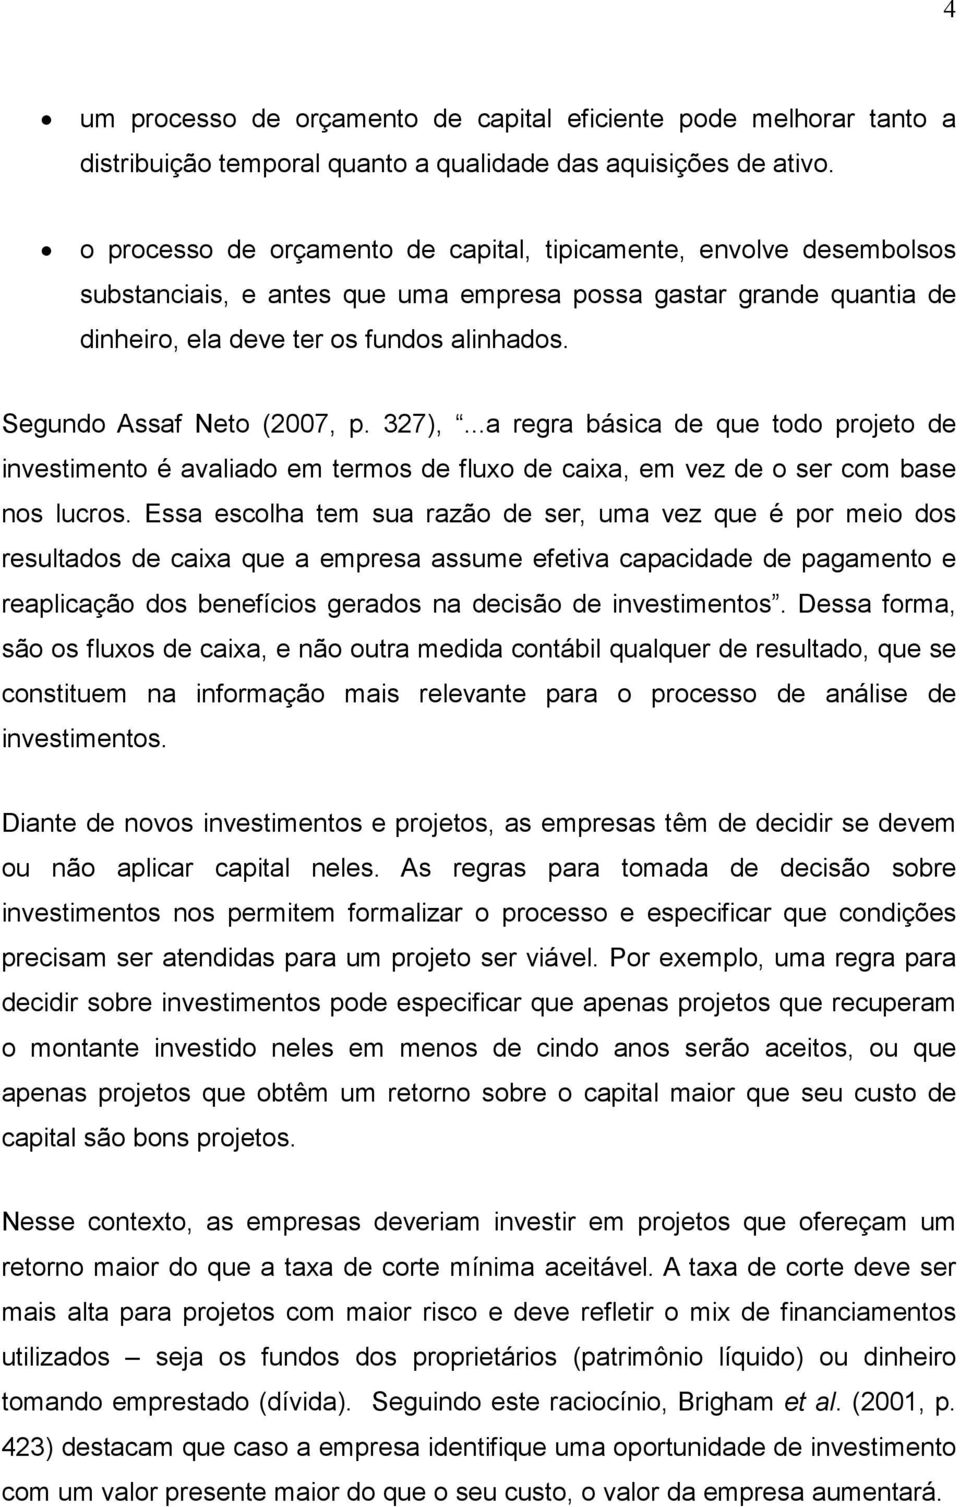 Segundo Assaf Neto (2007, p. 327),...a regra básica de que todo projeto de investimento é avaliado em termos de fluxo de caixa, em vez de o ser com base nos lucros.